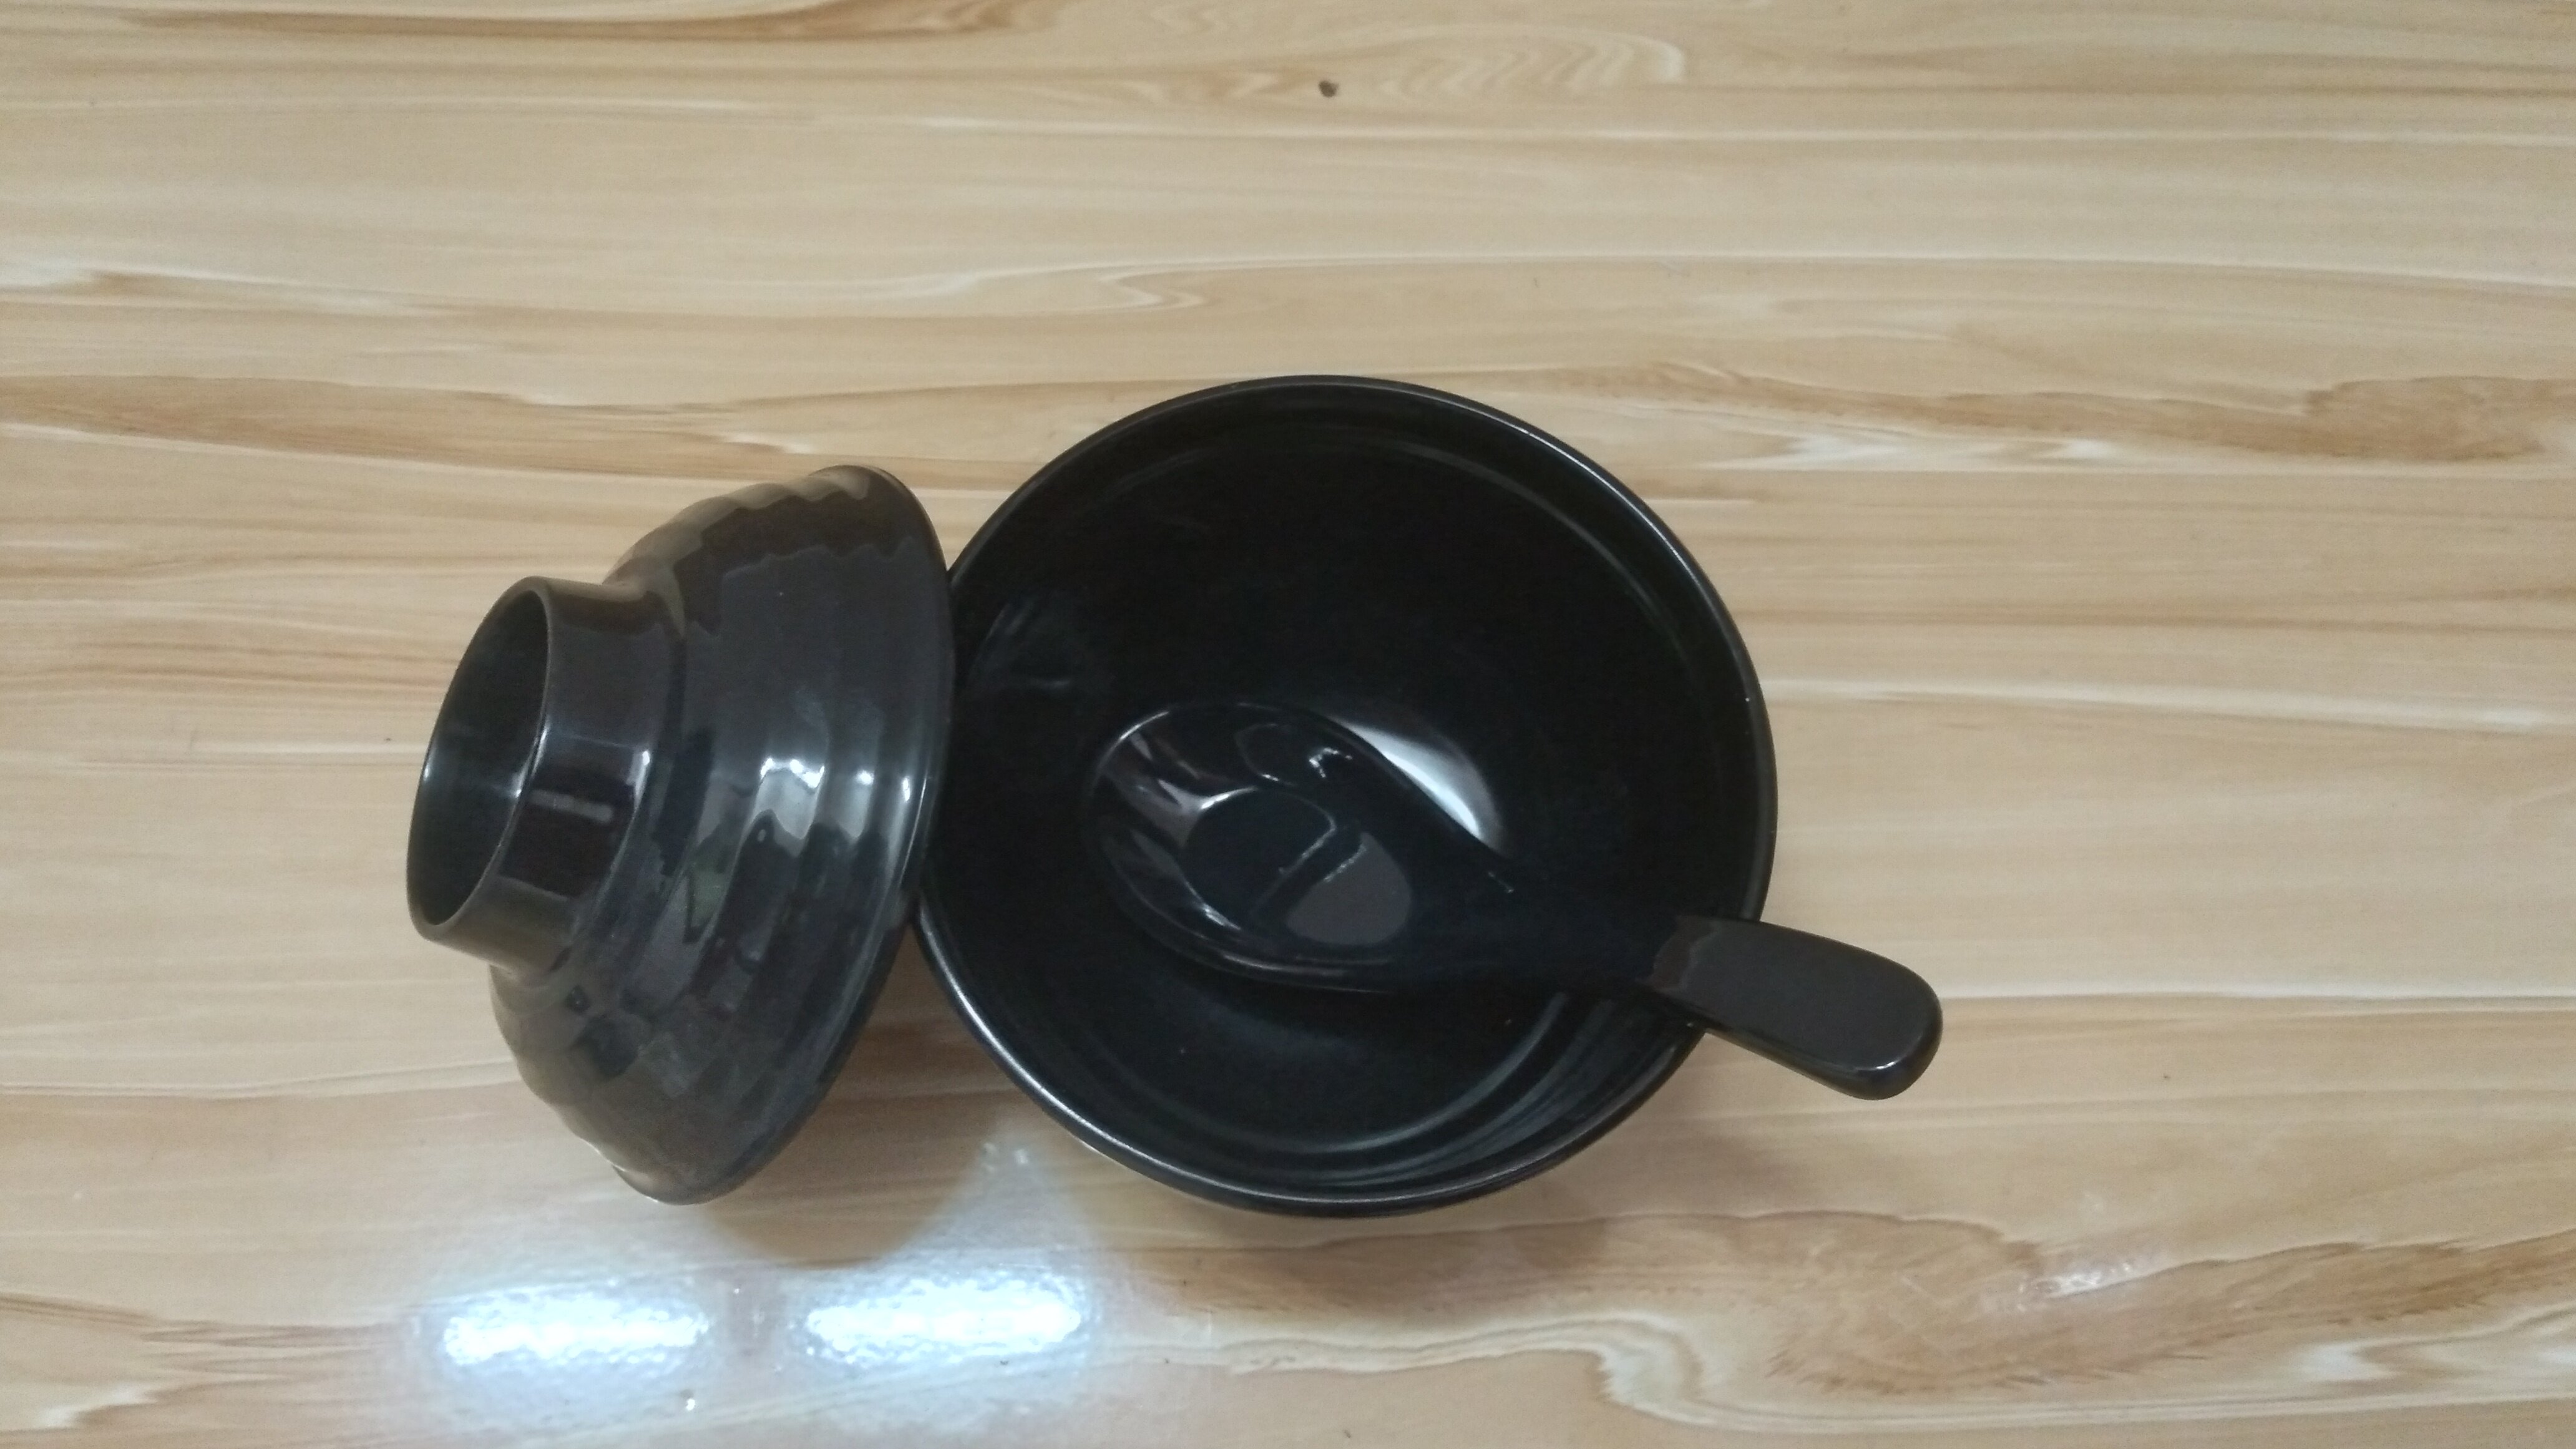 Chén(bát) đựng cơm,súp miso nhựa Melamine kiểu Hàn Quốc,Nhật Bản có nắp đậy Size 9.9 x 8.9 cm màu Đen/Trắng/Nâu